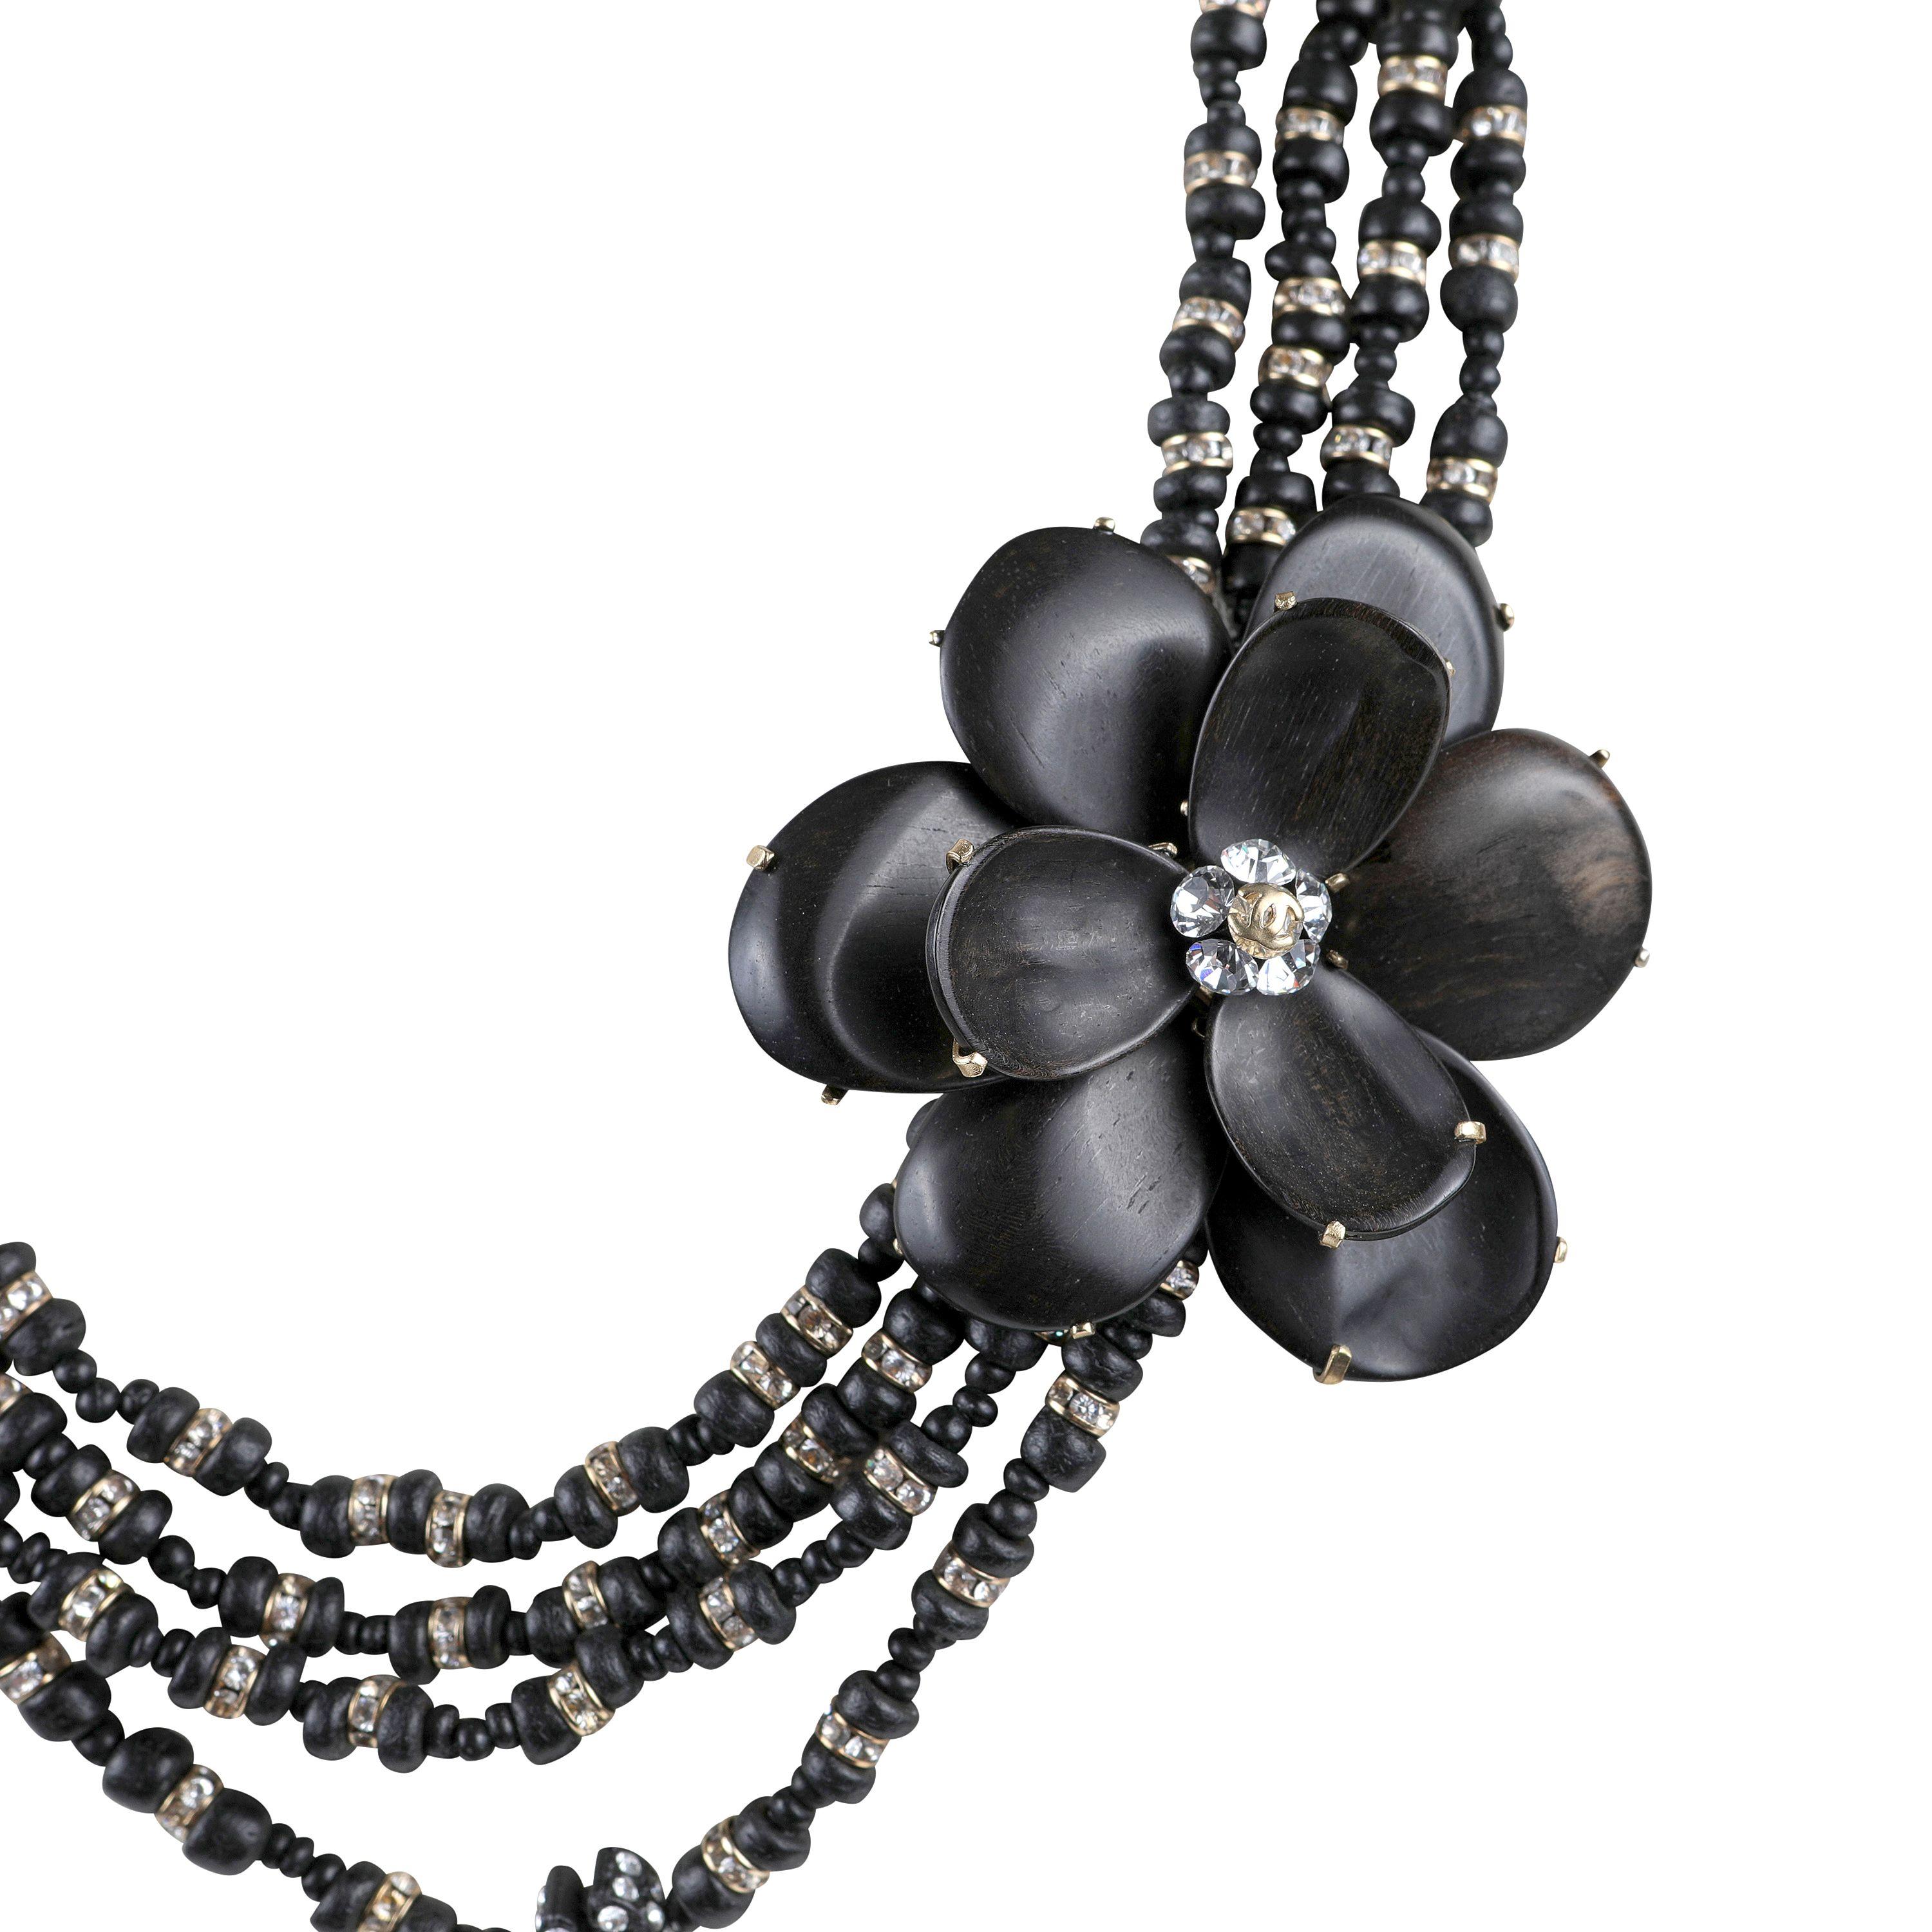 Diese authentische Chanel Schwarz Holzperlen und Kamelie Blume Halskette ist tadellos. Vier Reihen schwarzer Holzperlen sind mit funkelnden Kristallen durchsetzt.   Eine große Kamelienblüte hält die verschiedenen Stränge zusammen.  Inklusive Tasche